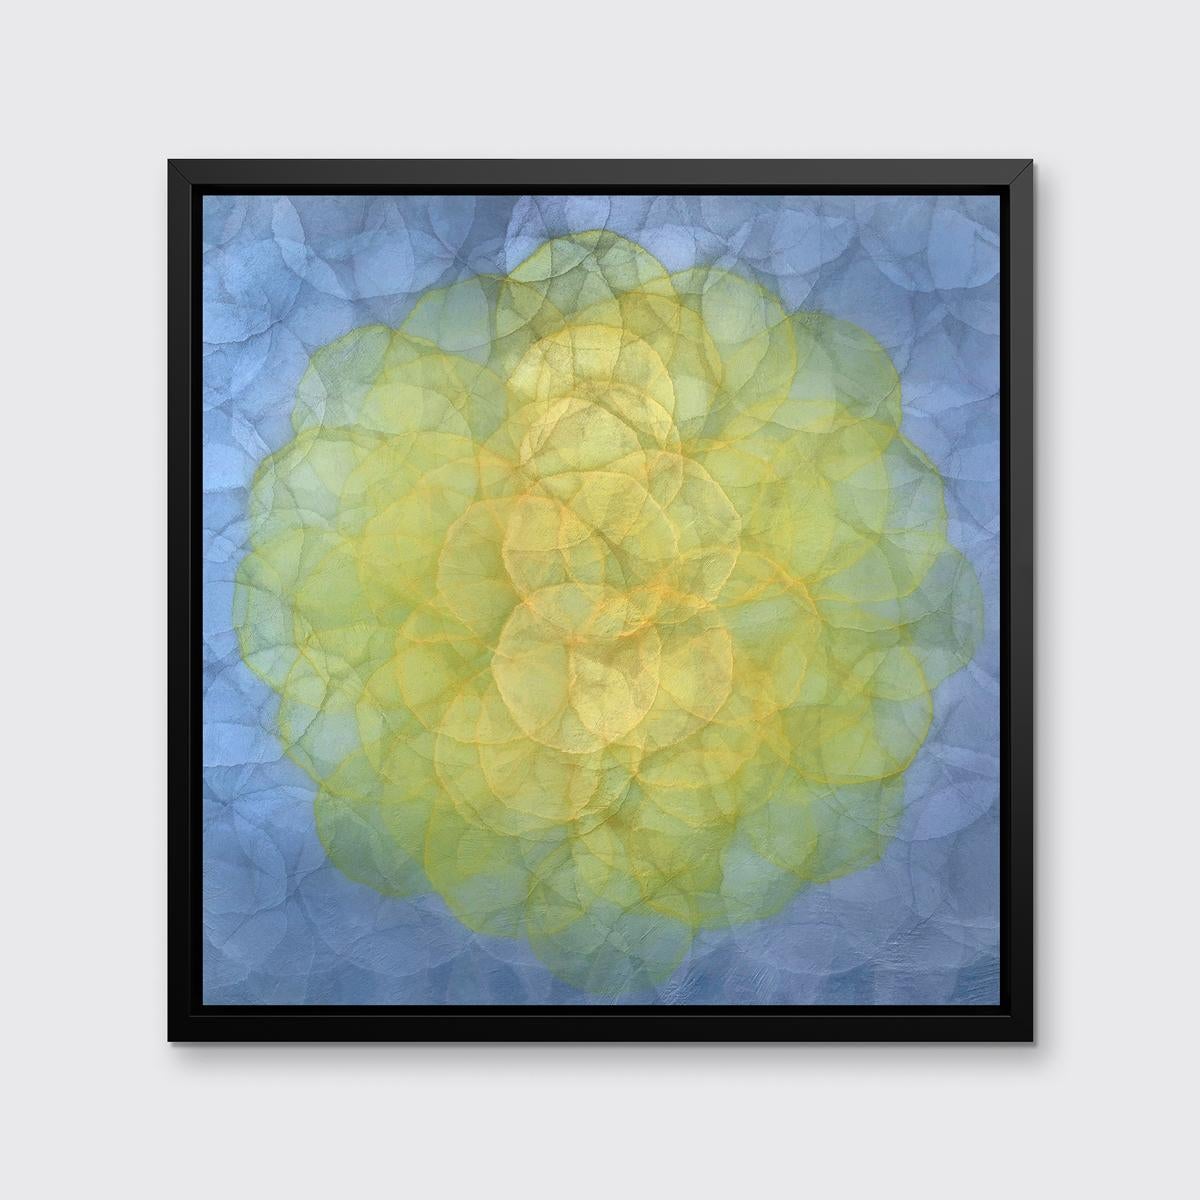 Cette impression abstraite en édition limitée de Roger Mudre présente une palette vibrante avec de petits cercles concentriques composant un plus grand cercle jaune au centre de la composition, et un périmètre gris argenté froid et lavande. Cette